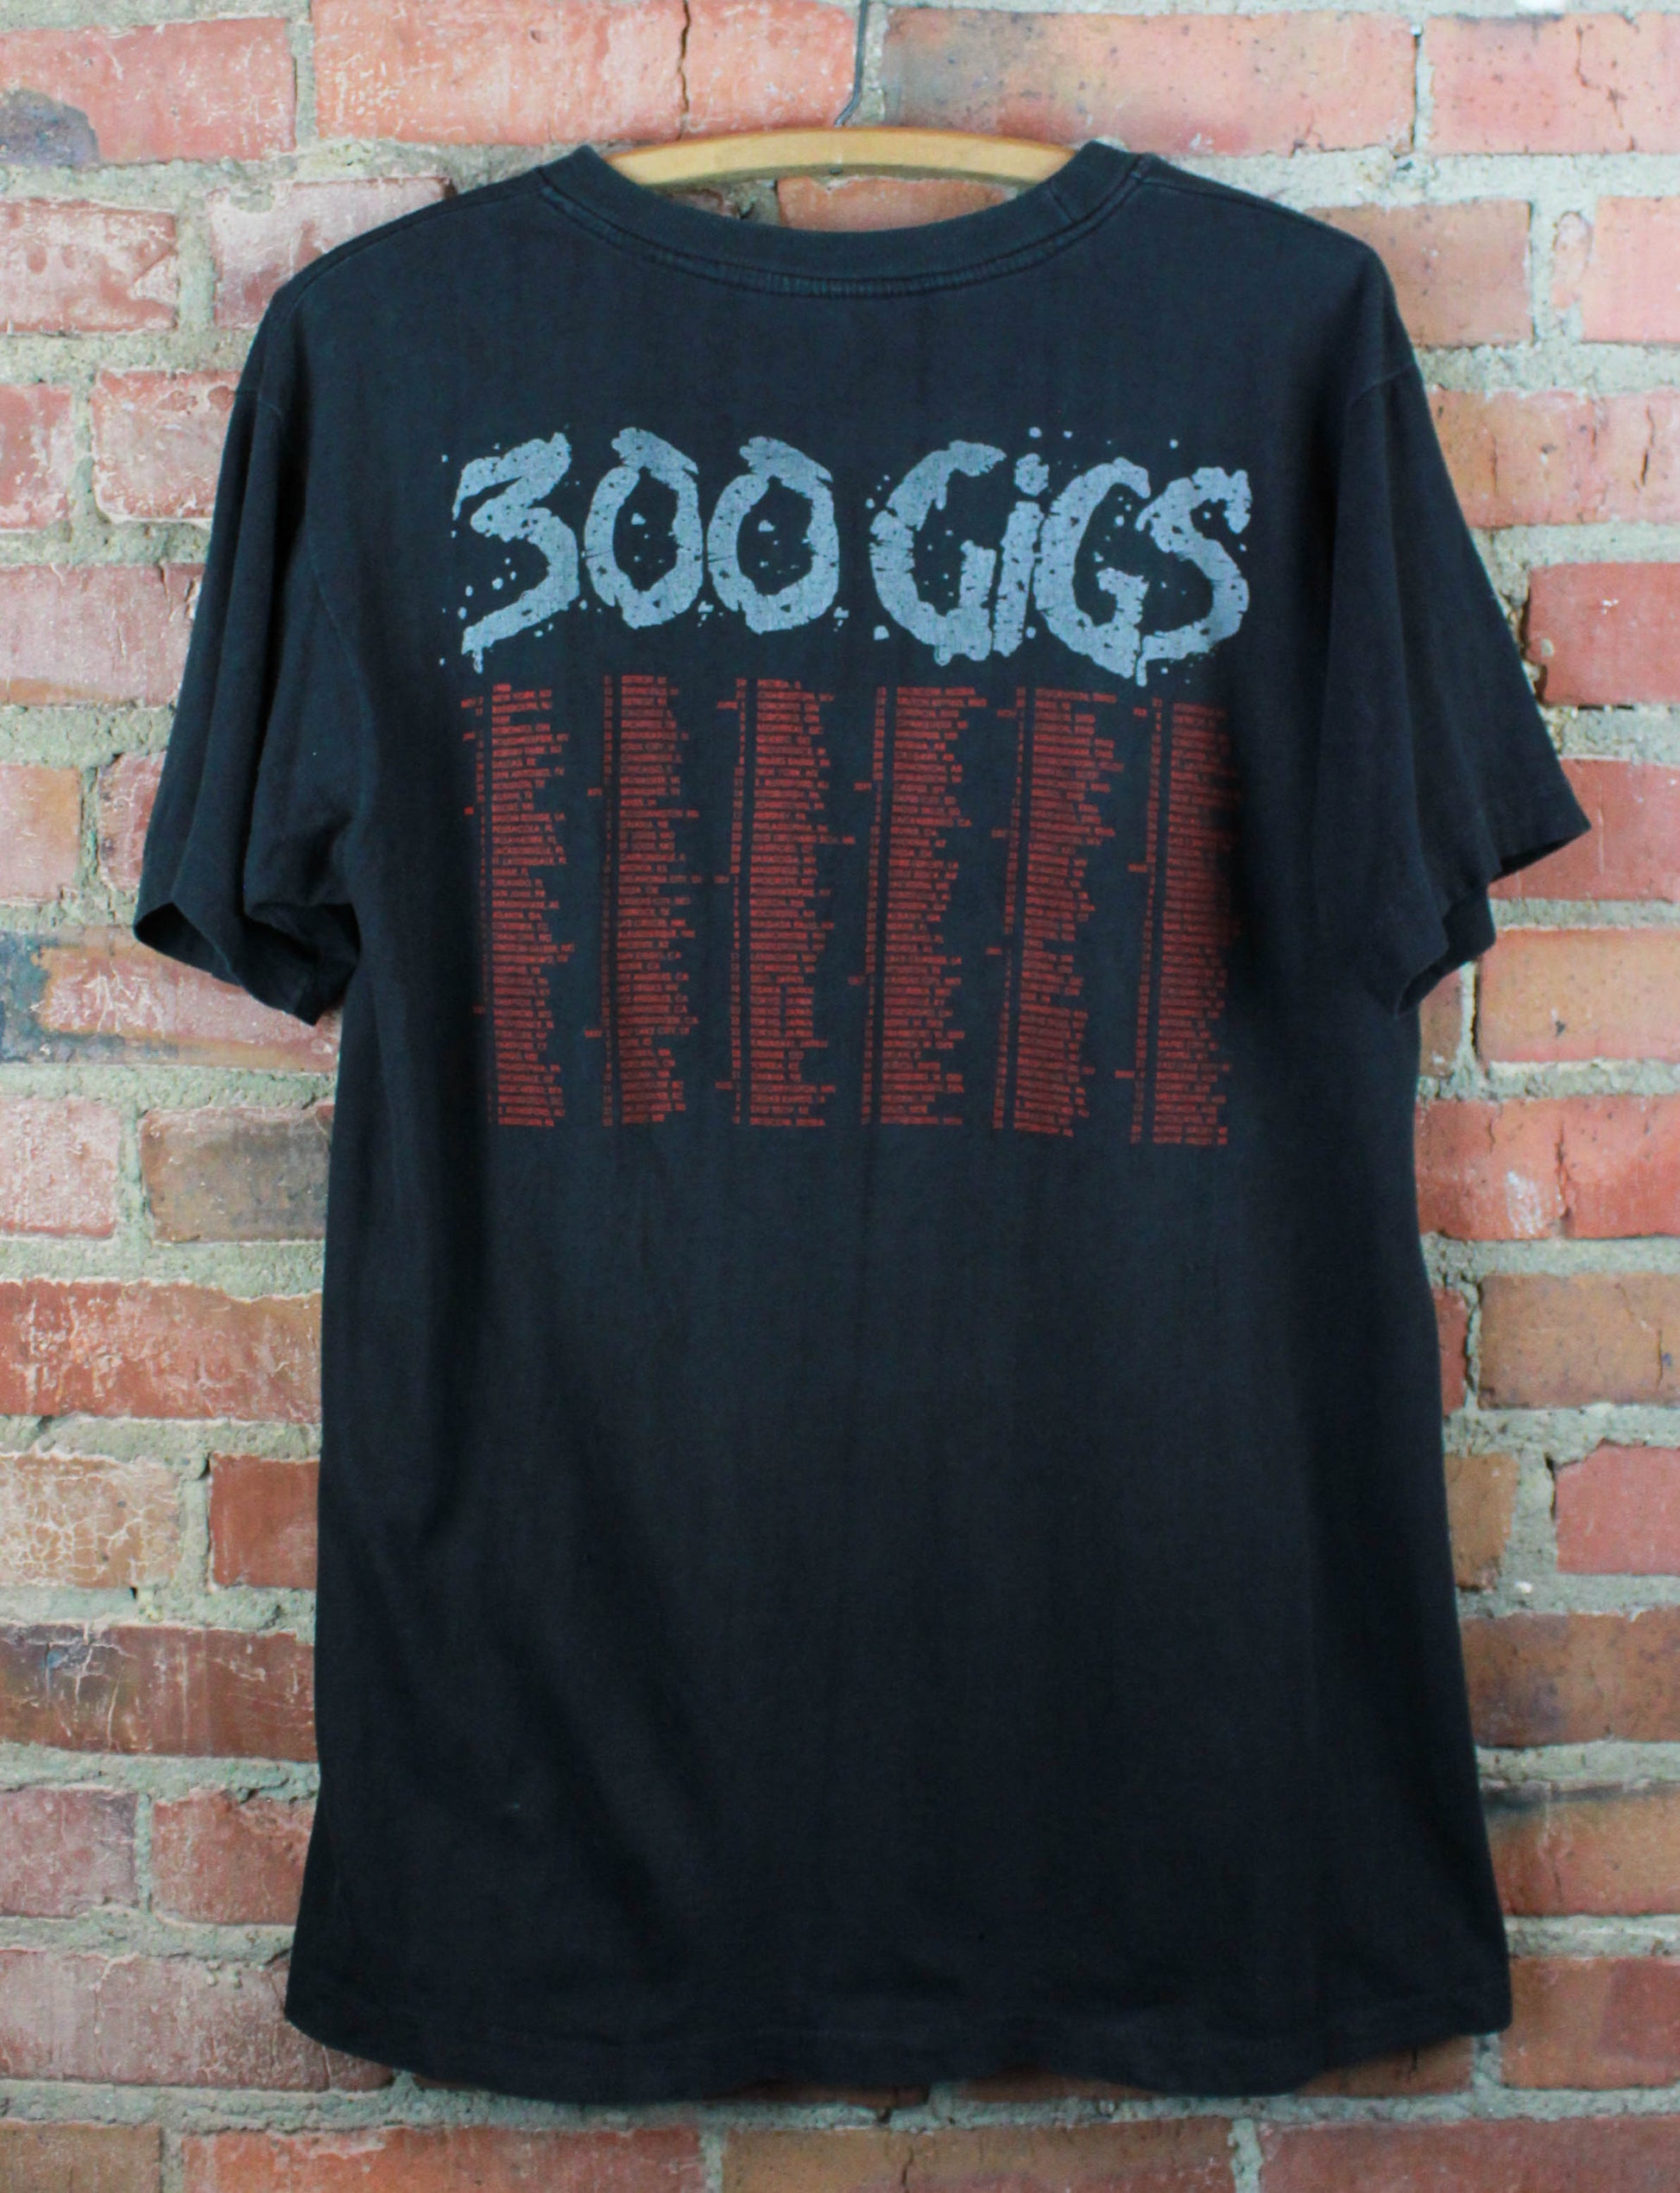 Vintage 1990 Skid Row Concert T Shirt 300 Gigs Tour Black Unisex Large